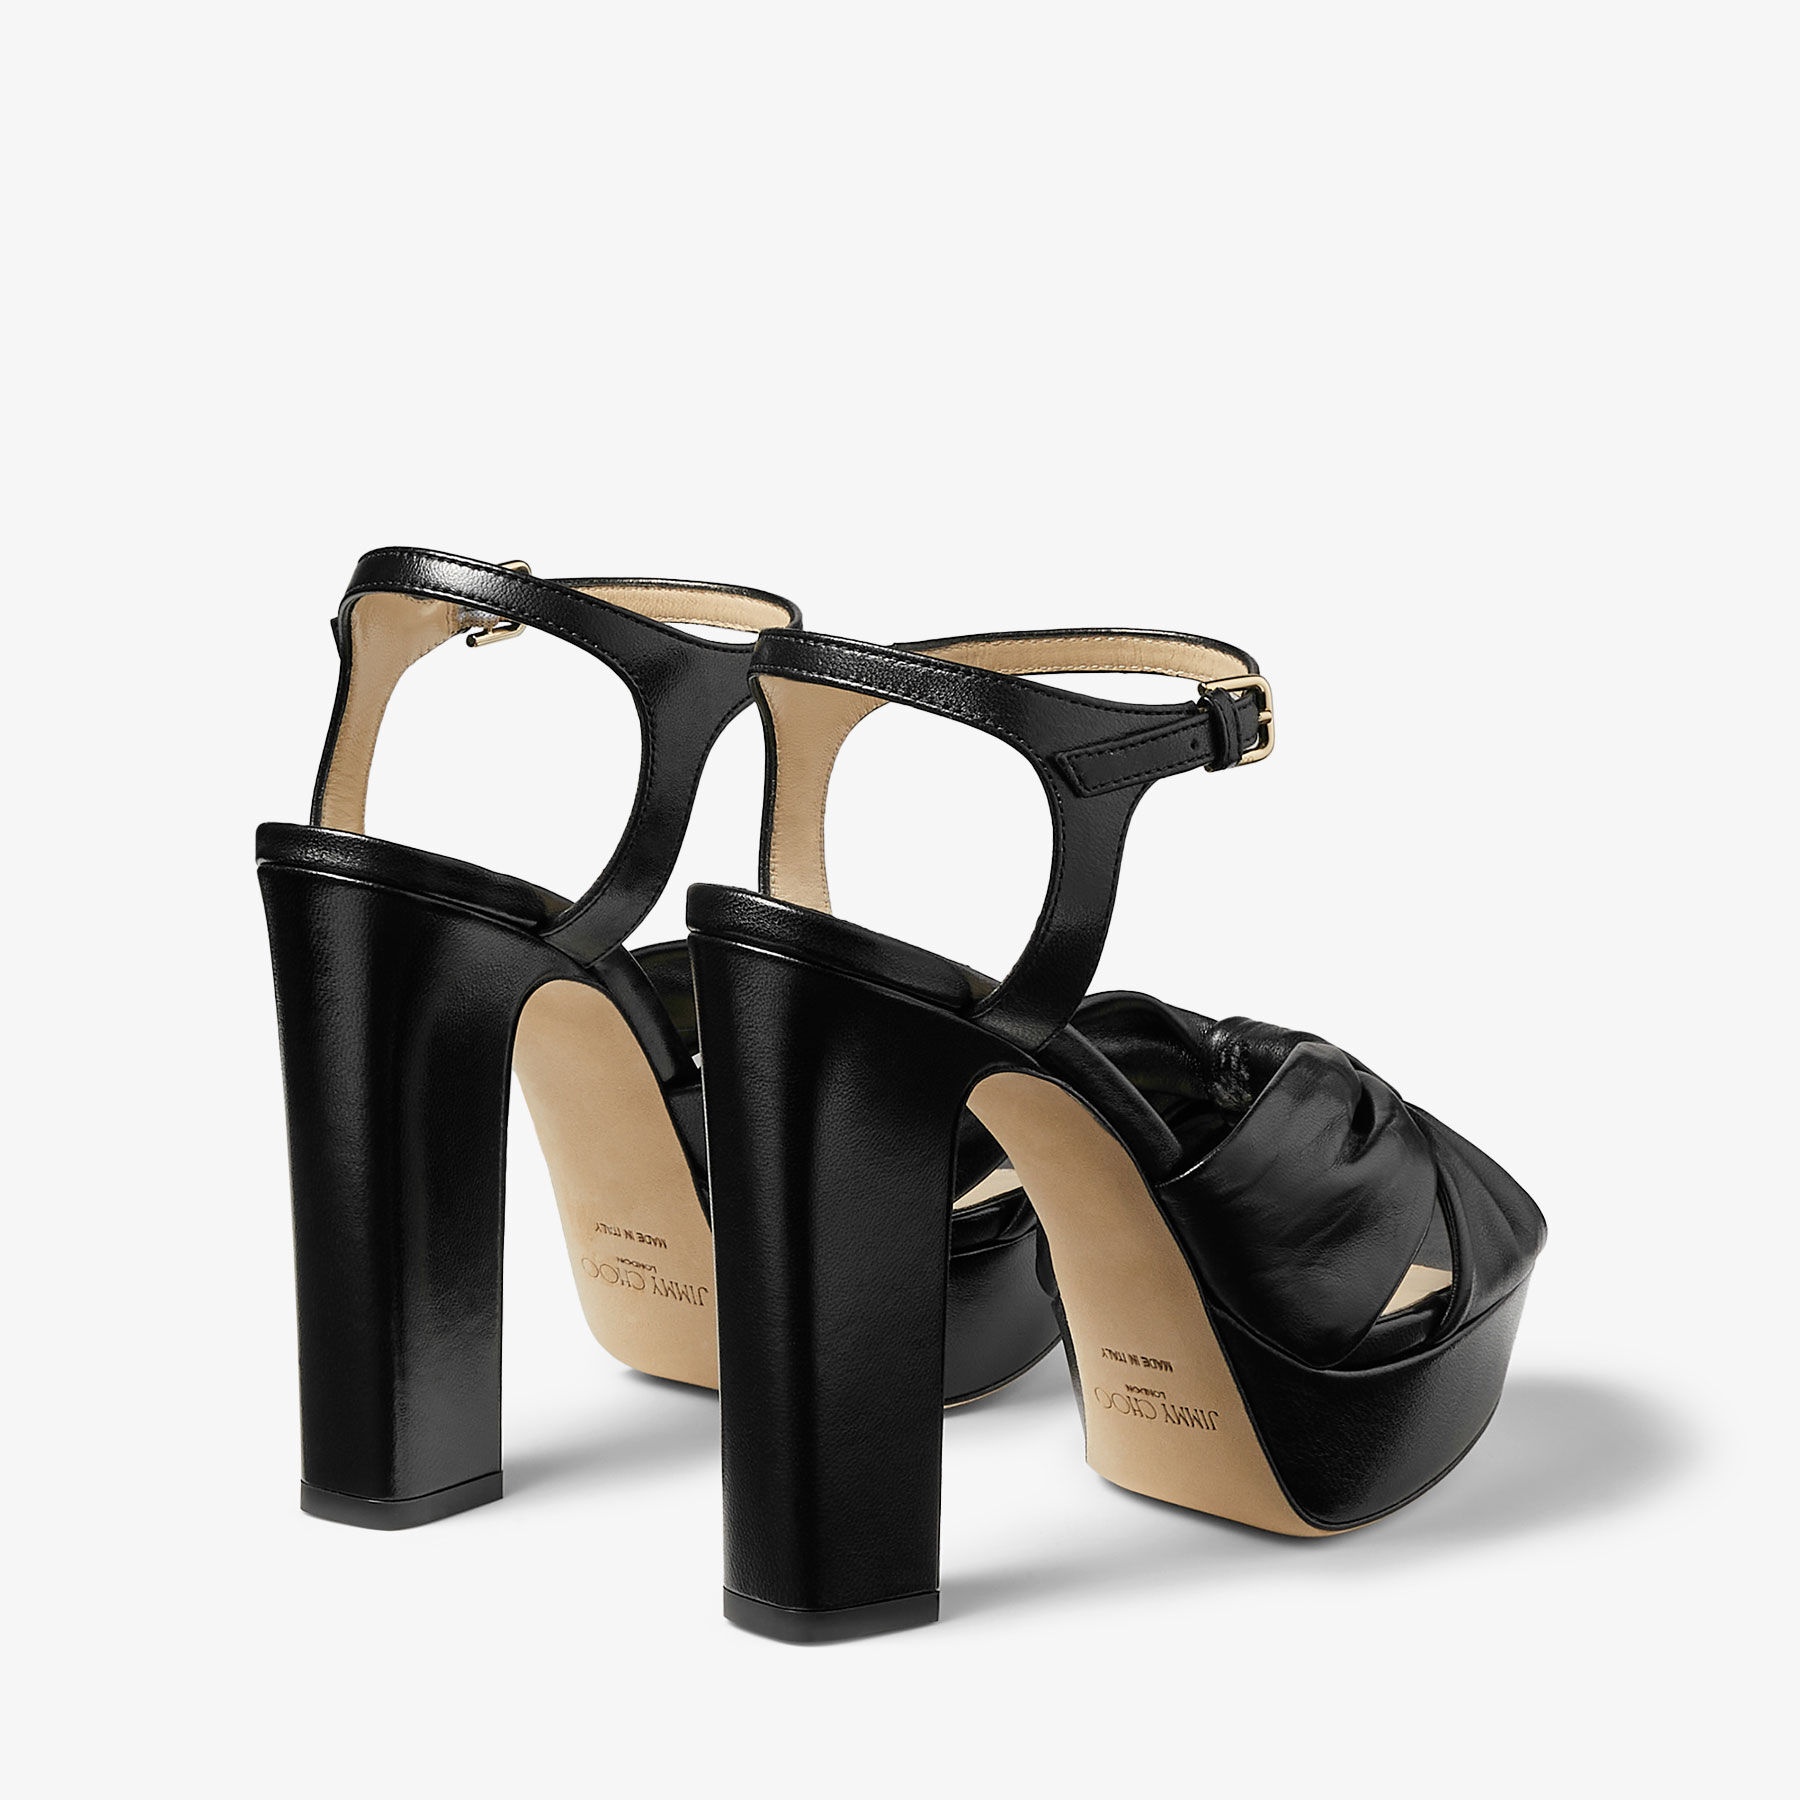 Heloise 120
Black Nappa Leather Platform Sandals - 5